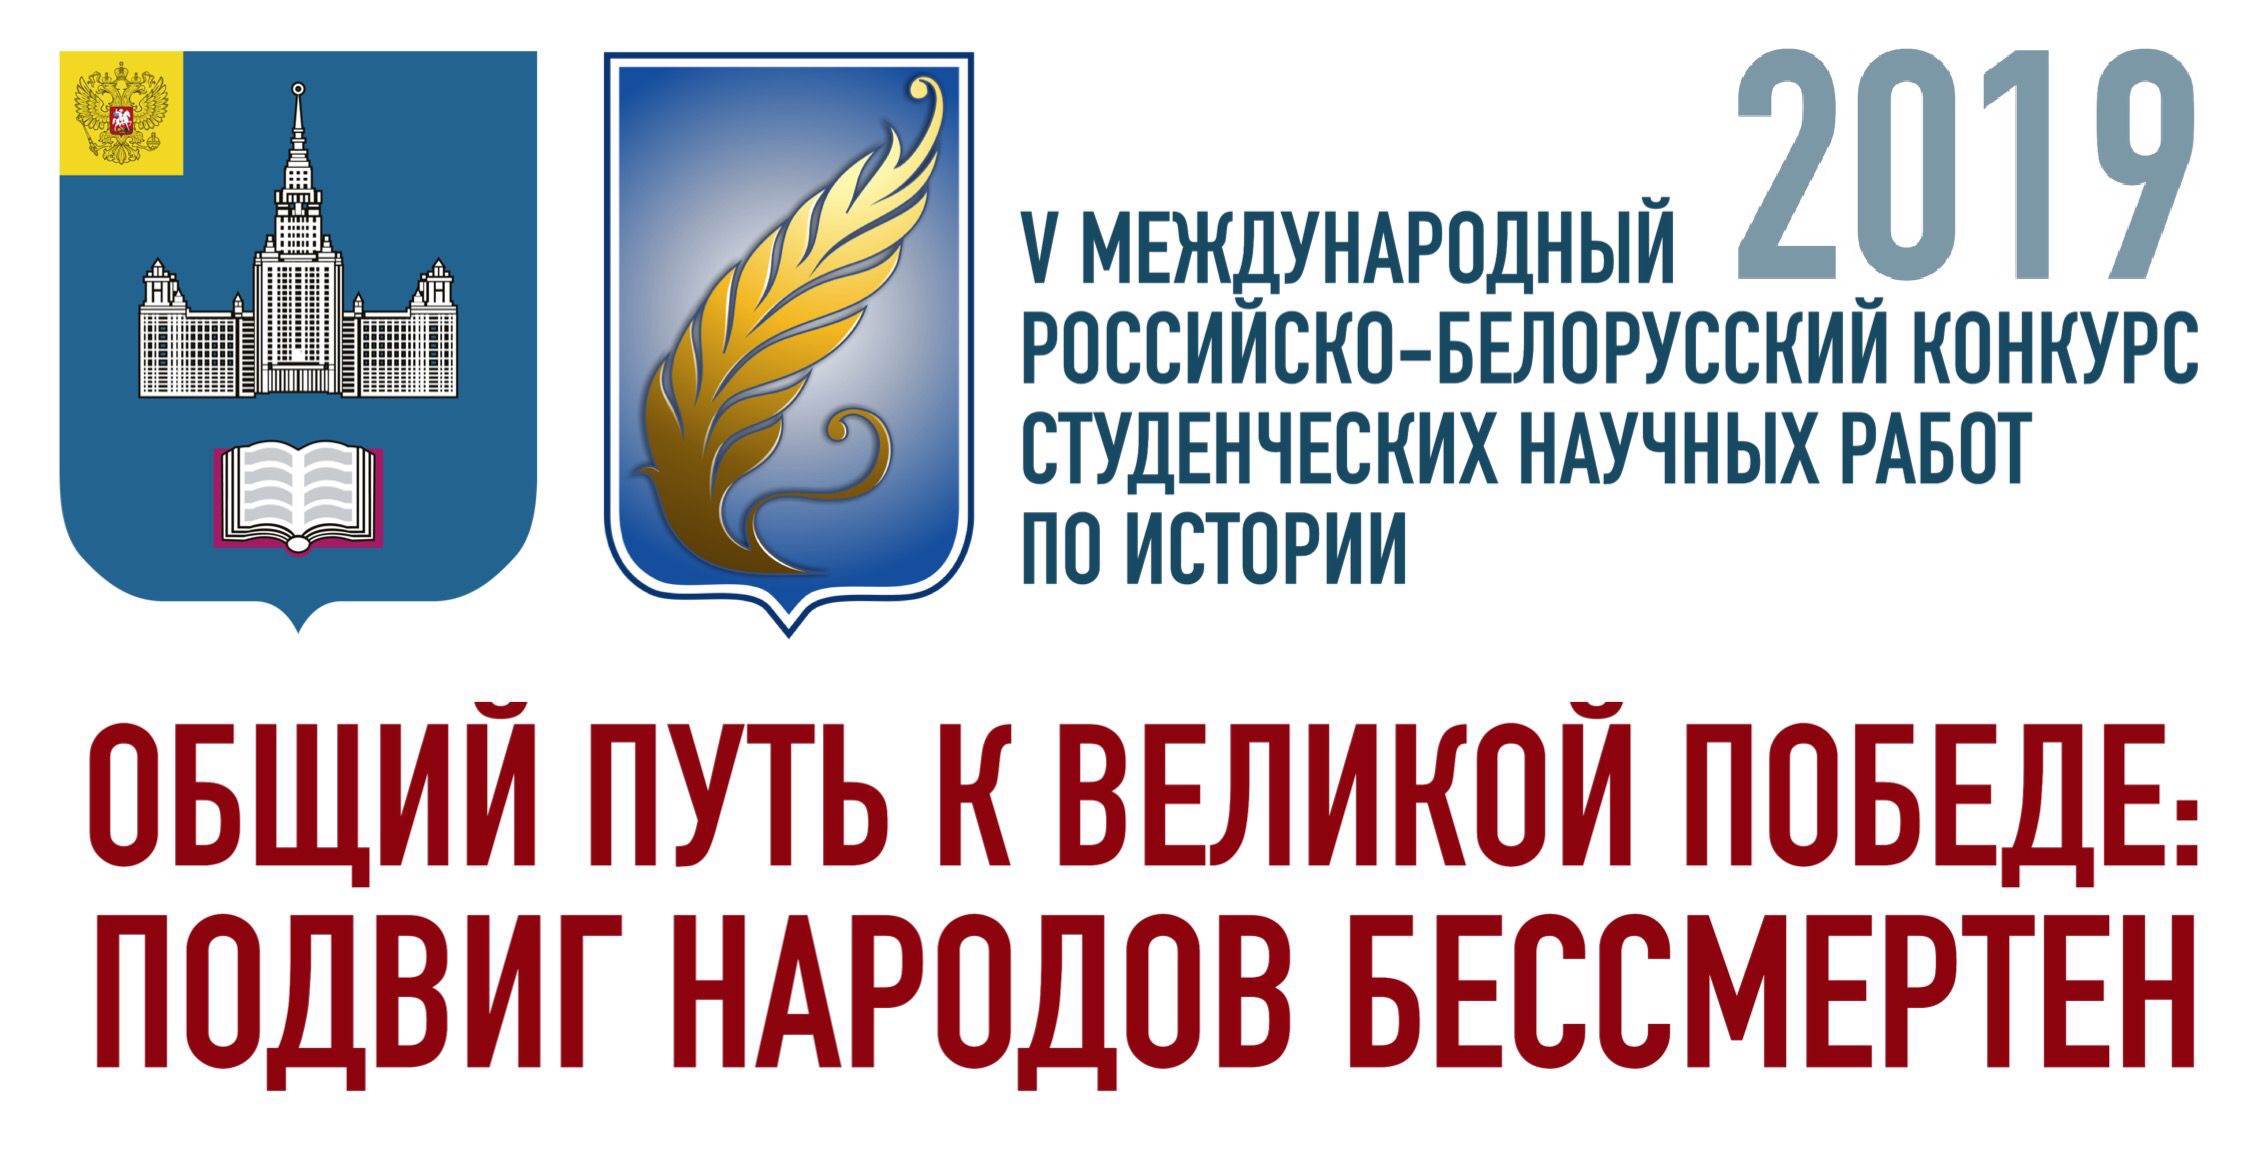 Результаты заочного этапа V Международного российско-белорусского конкурса студенческих научных работ по истории